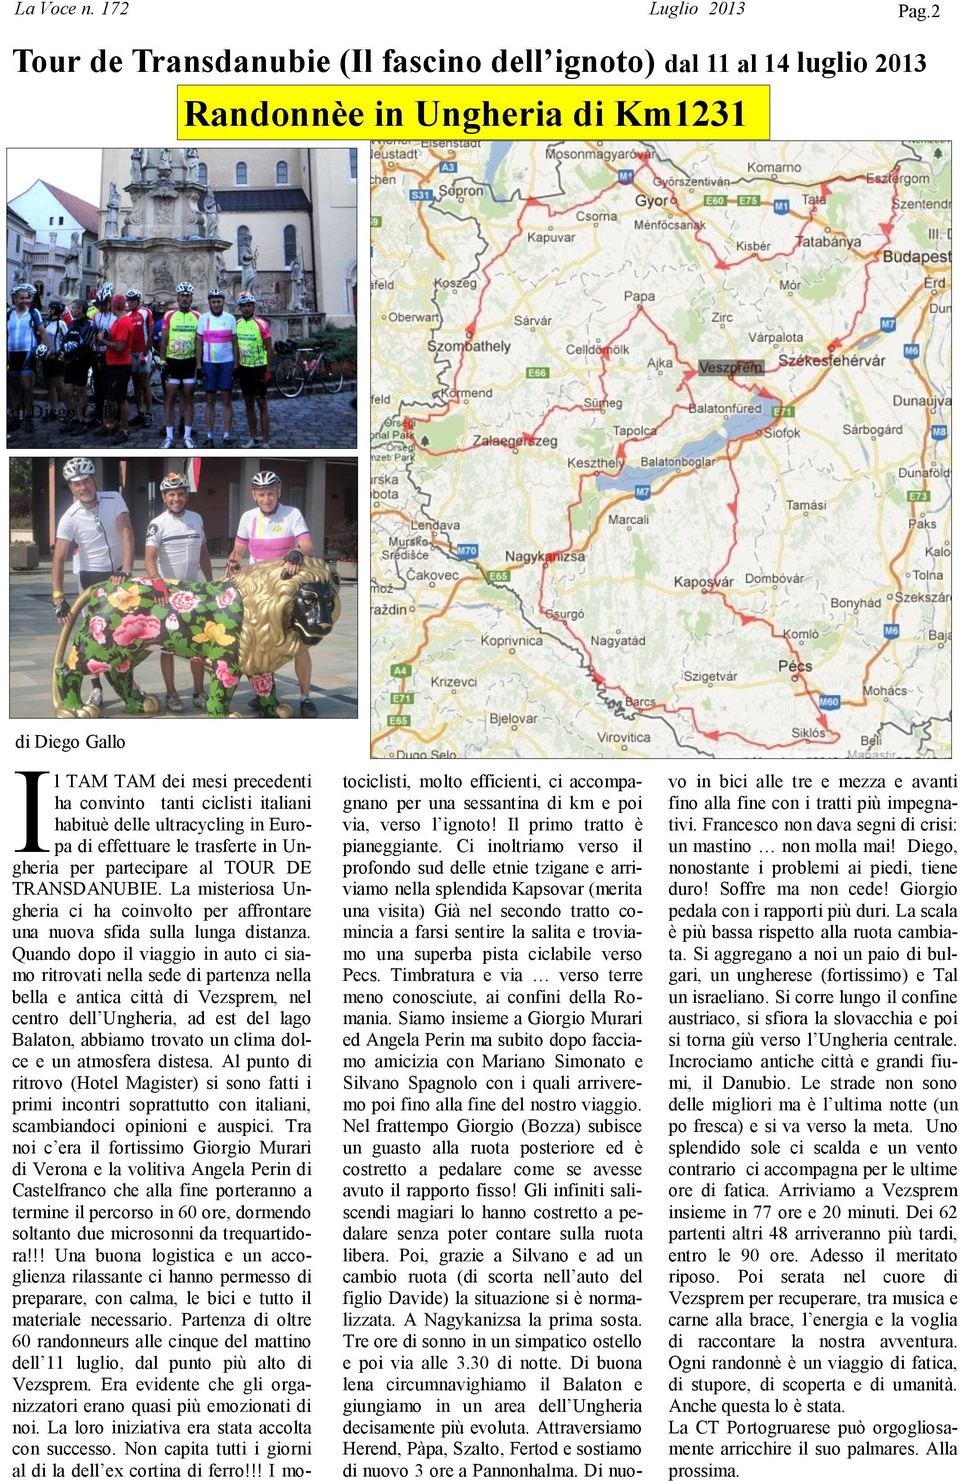 italiani habituè delle ultracycling in Europa di effettuare le trasferte in Ungheria per partecipare al TOUR DE TRANSDANUBIE.